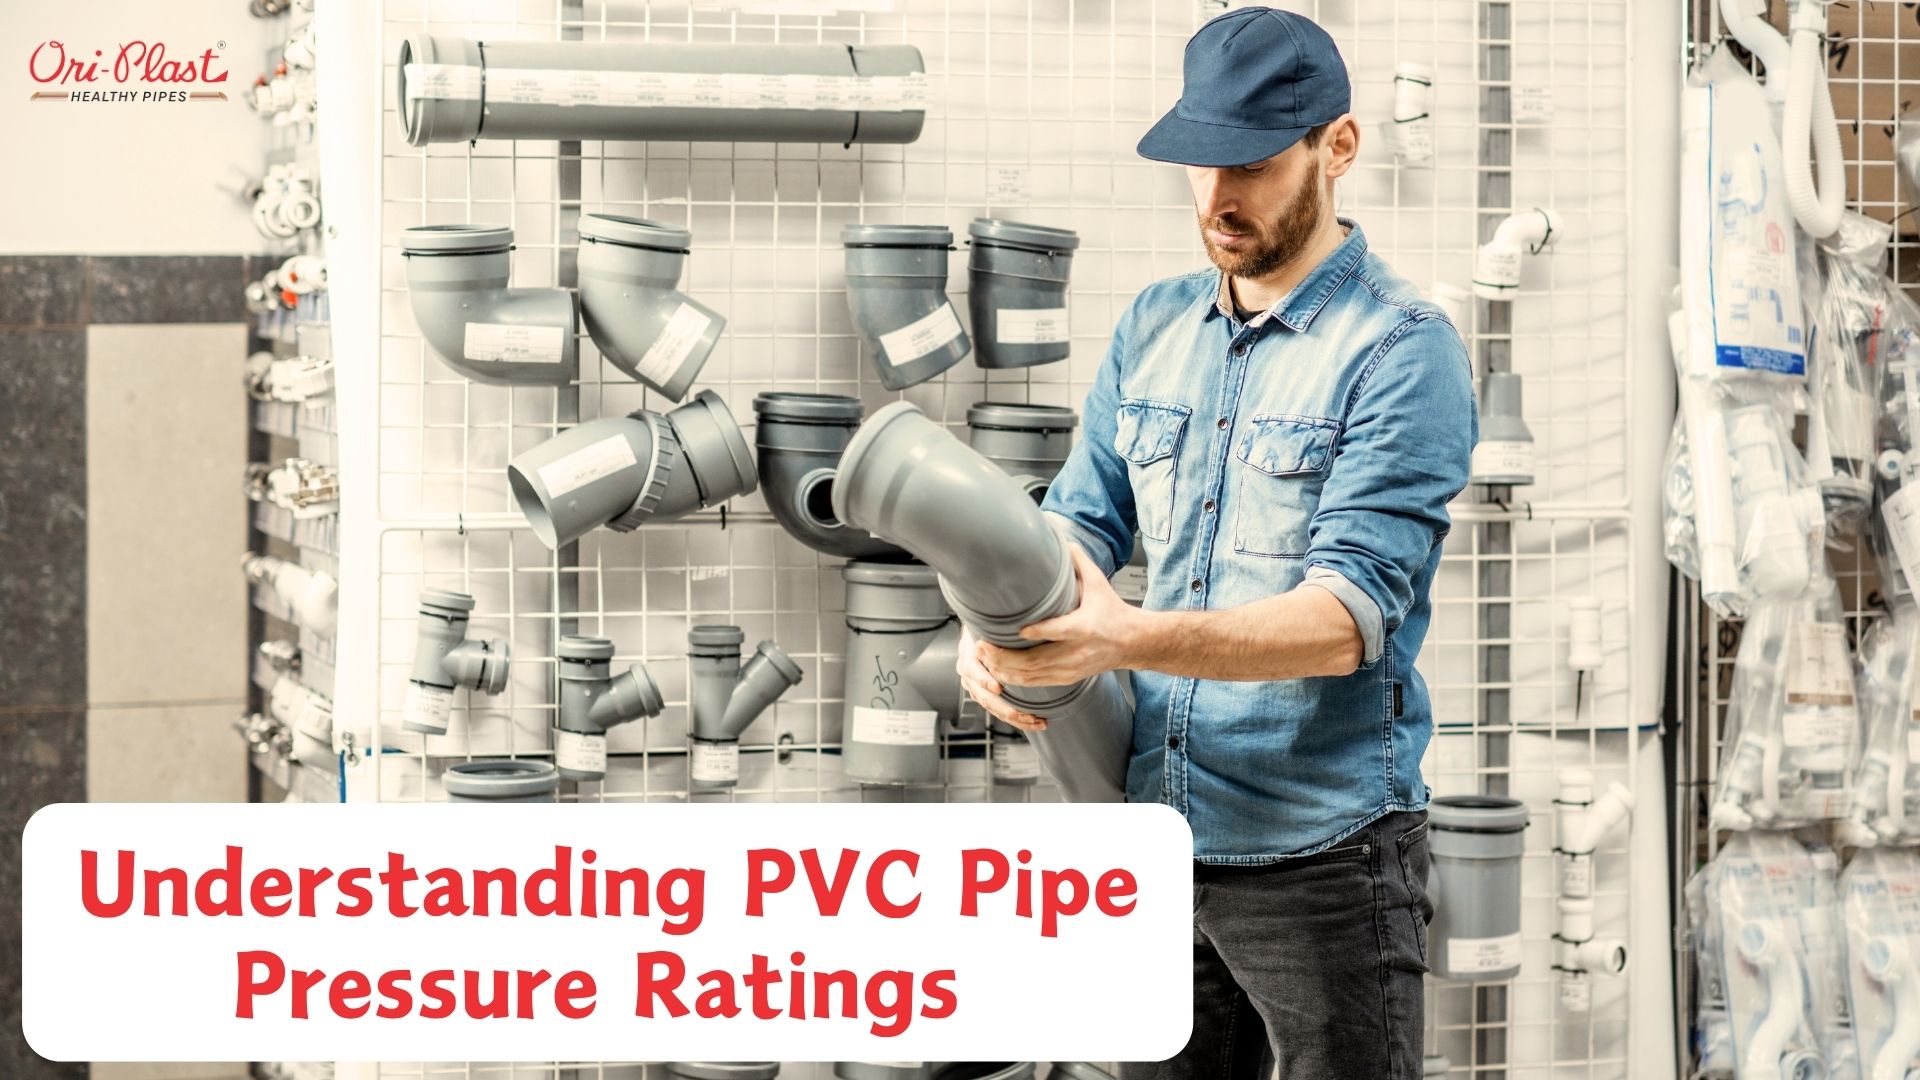 PVC Pipe Pressure Ratings